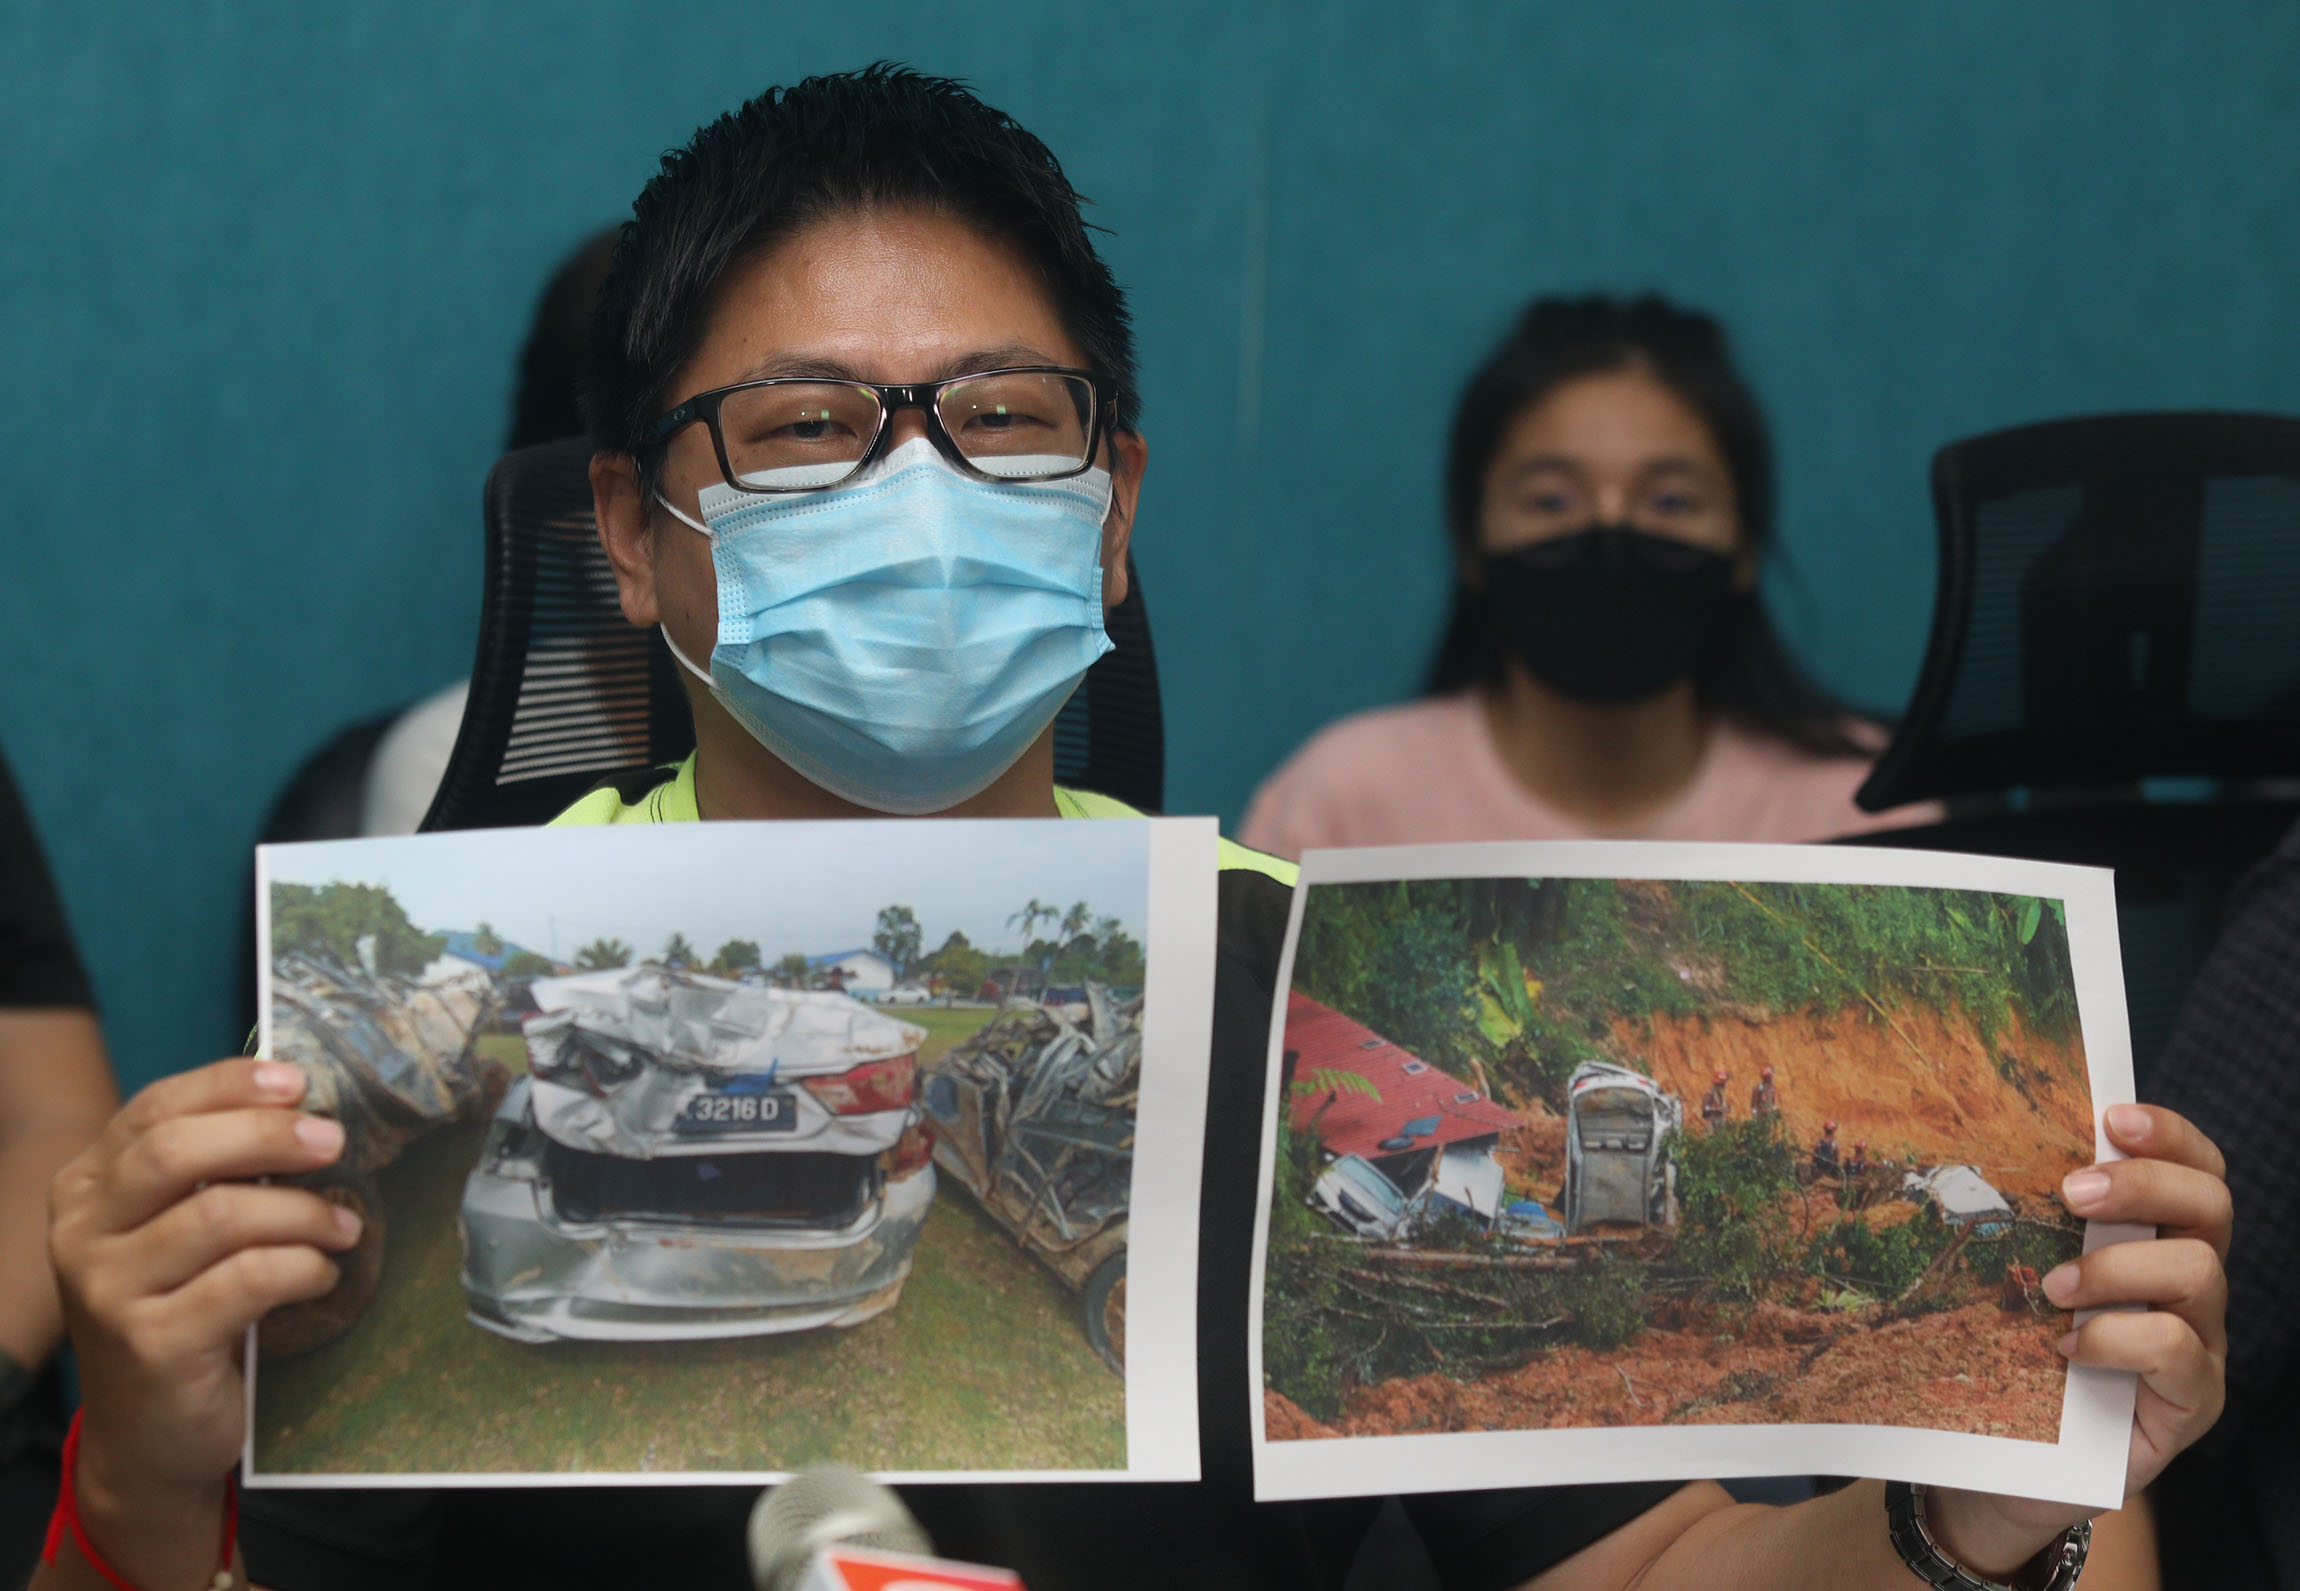 峇冬加里露营地土崩事故 20车报废·“家属被征收RM1450拖车费”